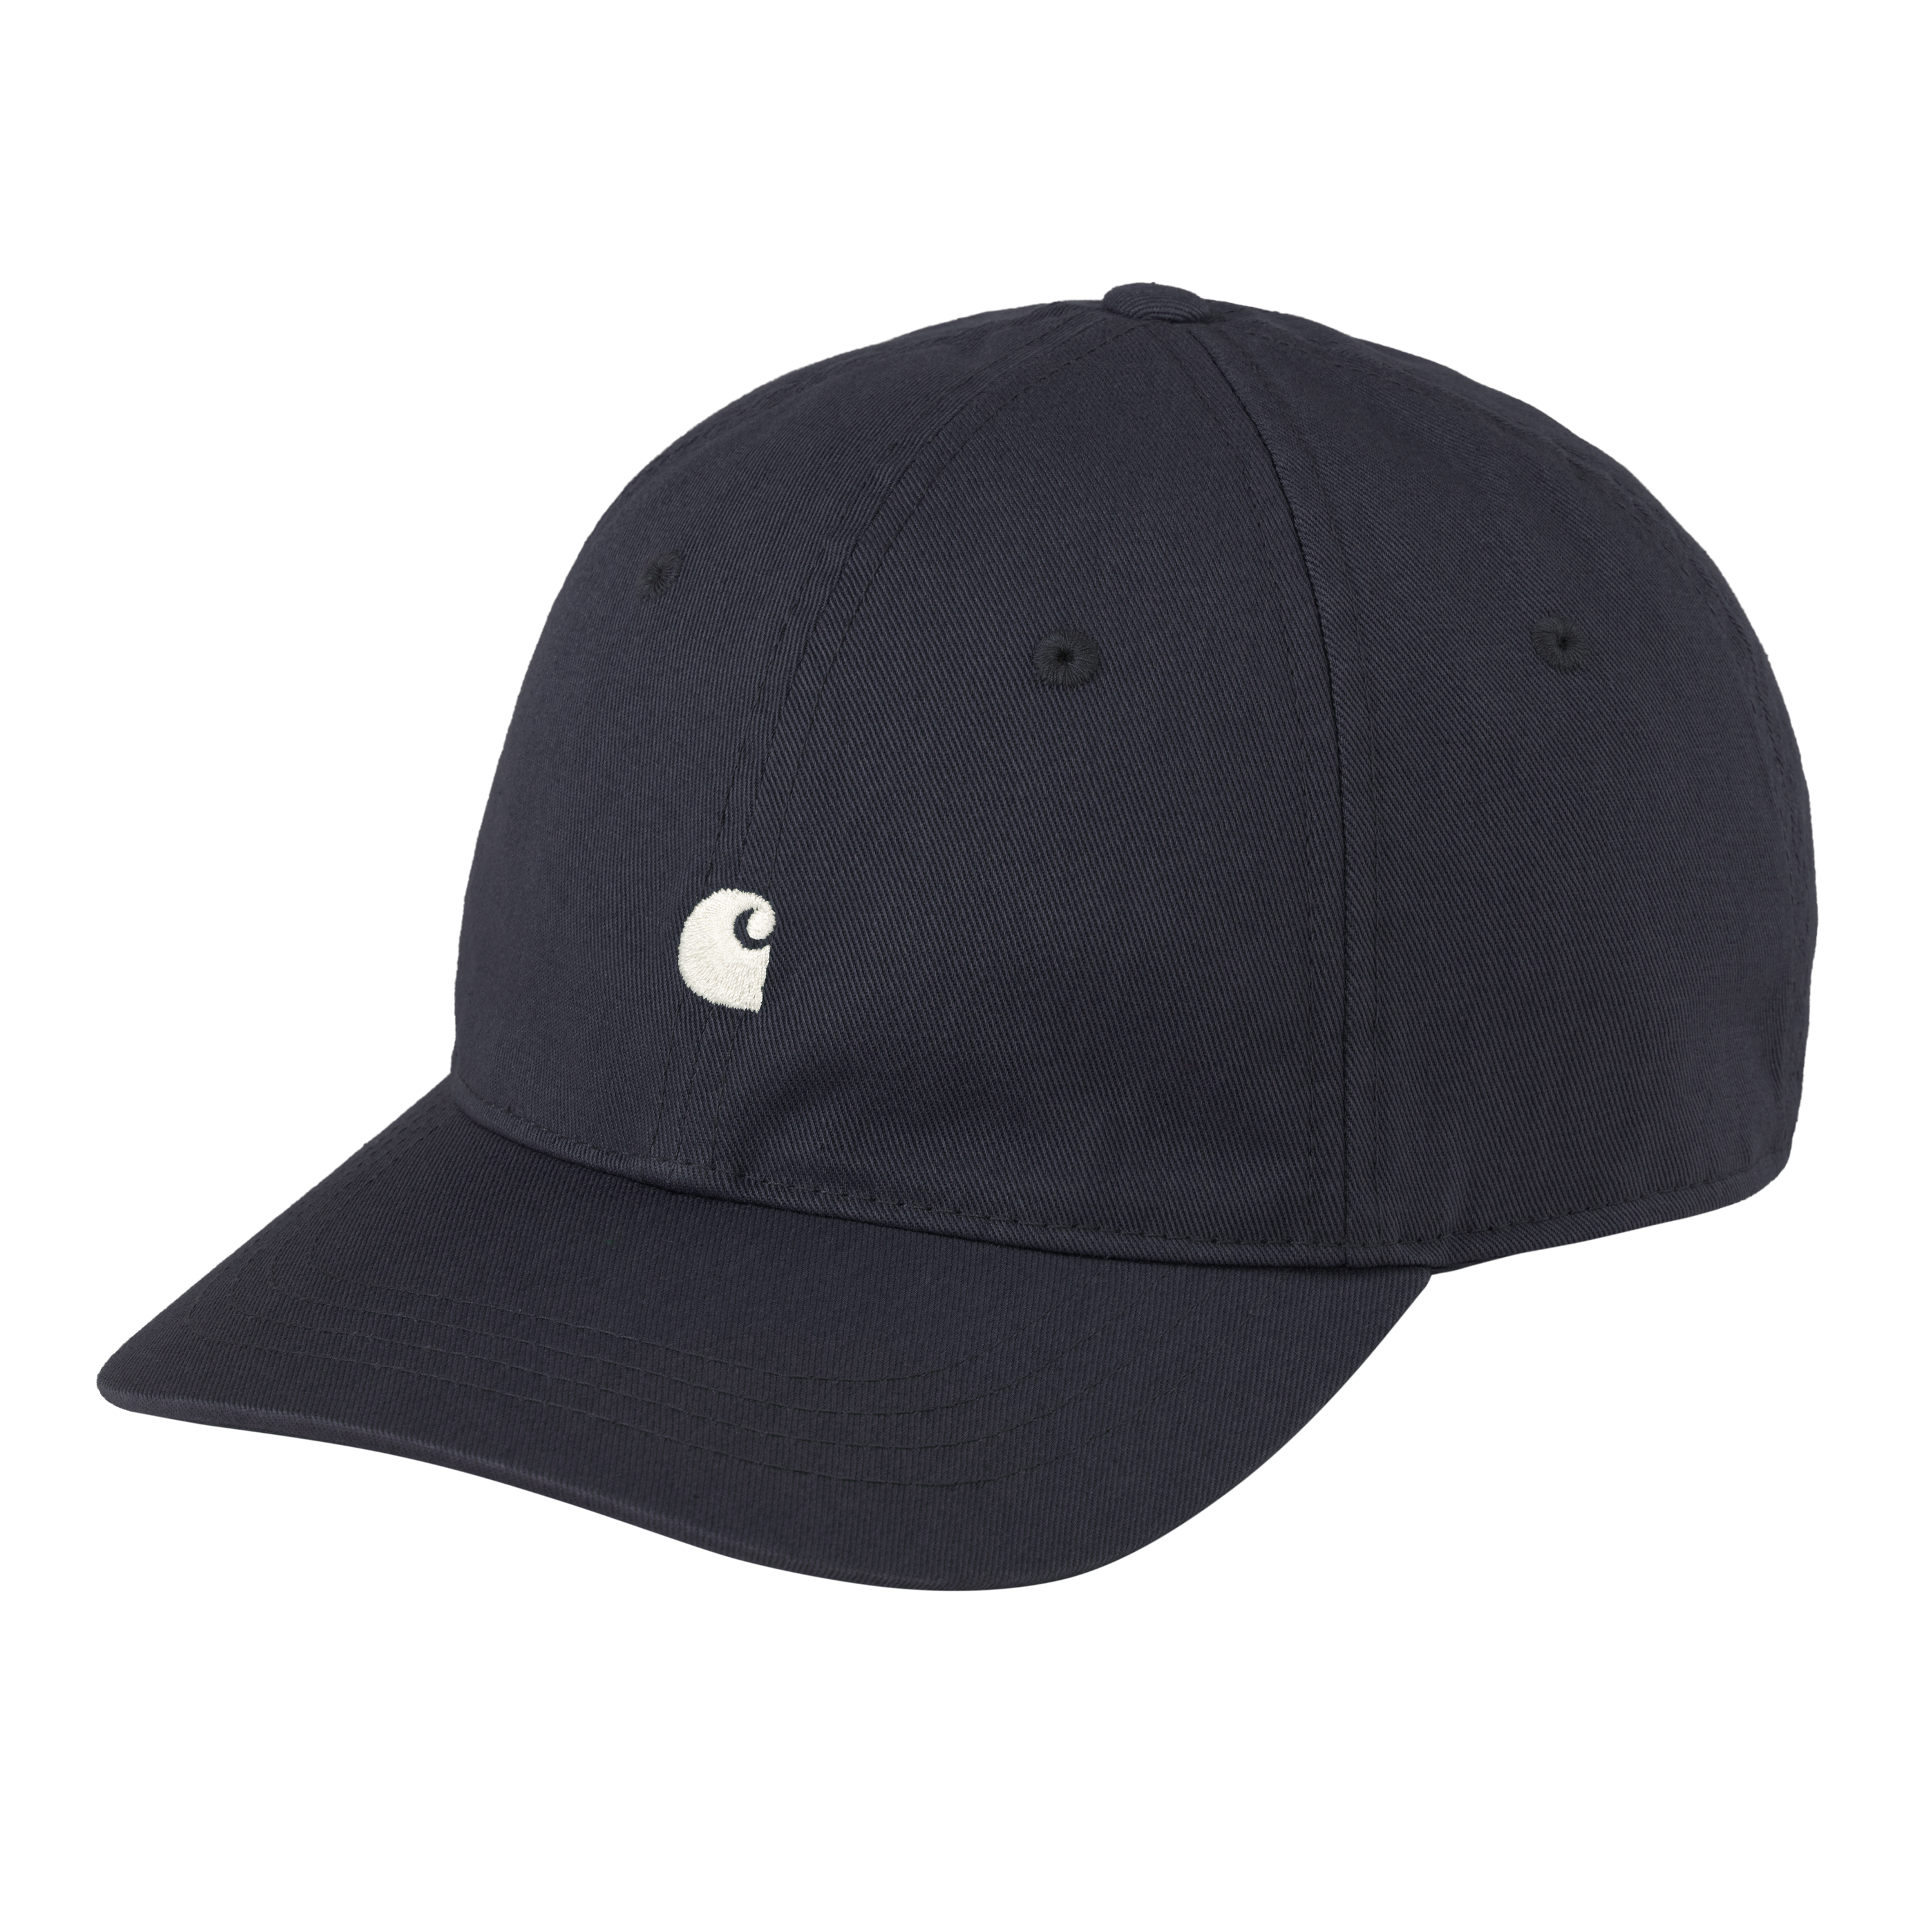 Carhartt WIP Accessories Caps & Bucket Hats | Carhartt WIP